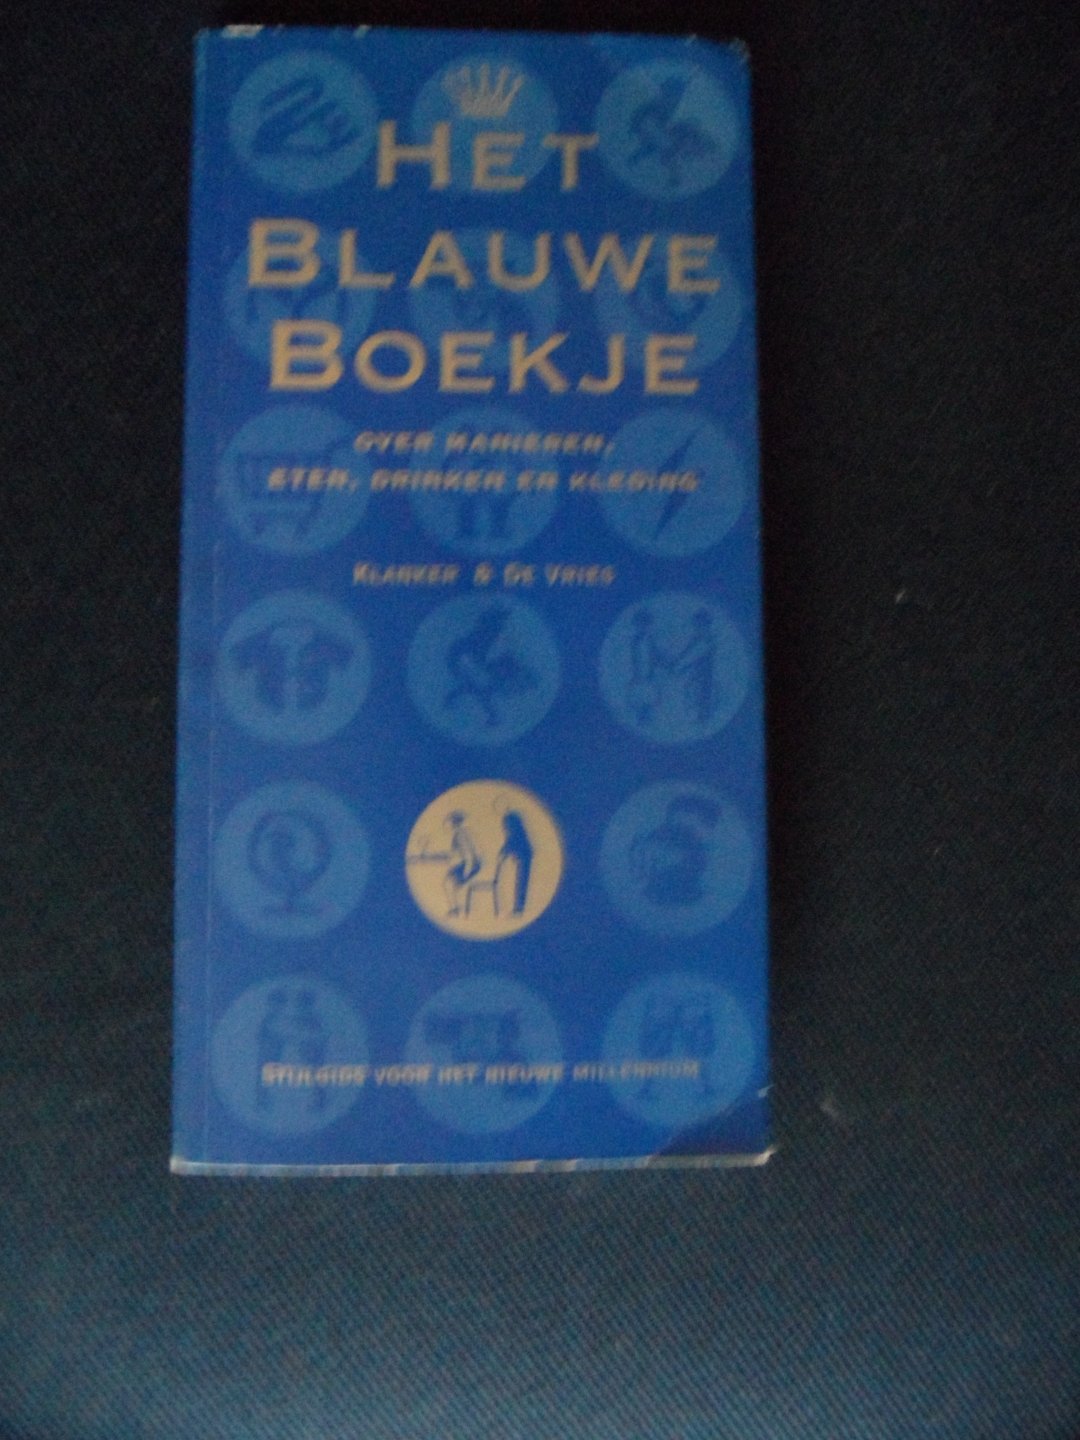 Klanker & de Vries - Het blauwe boekje. Over manieren, eten, drinken en kleding. Stijlgids voor het nieuwe millennium